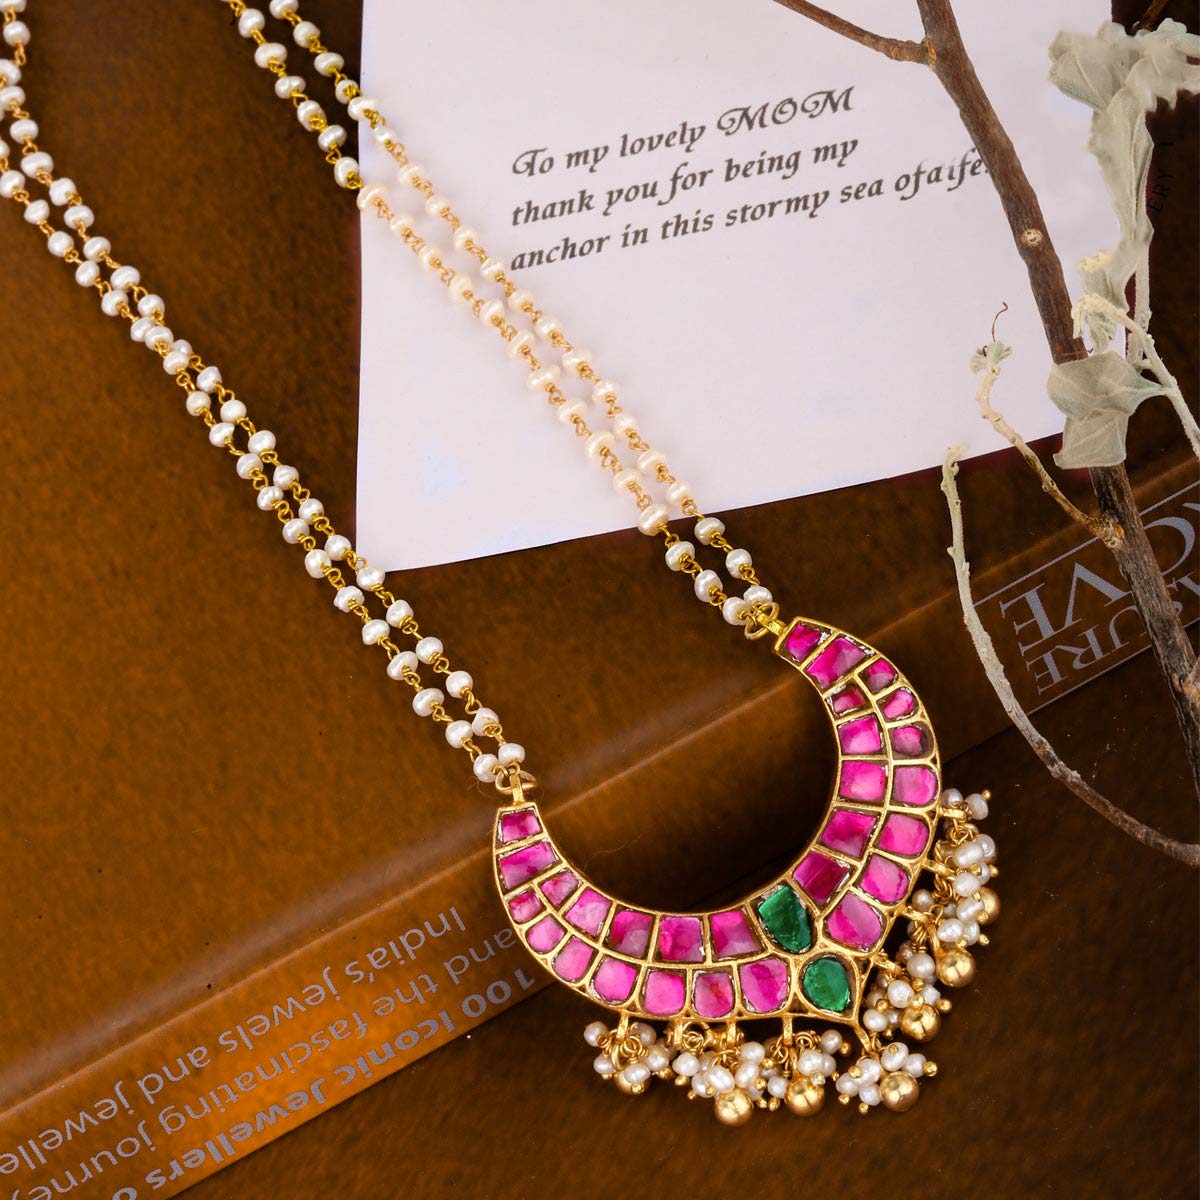 Artisanal Abundance Orange Necklace -Jewelry by Bretta